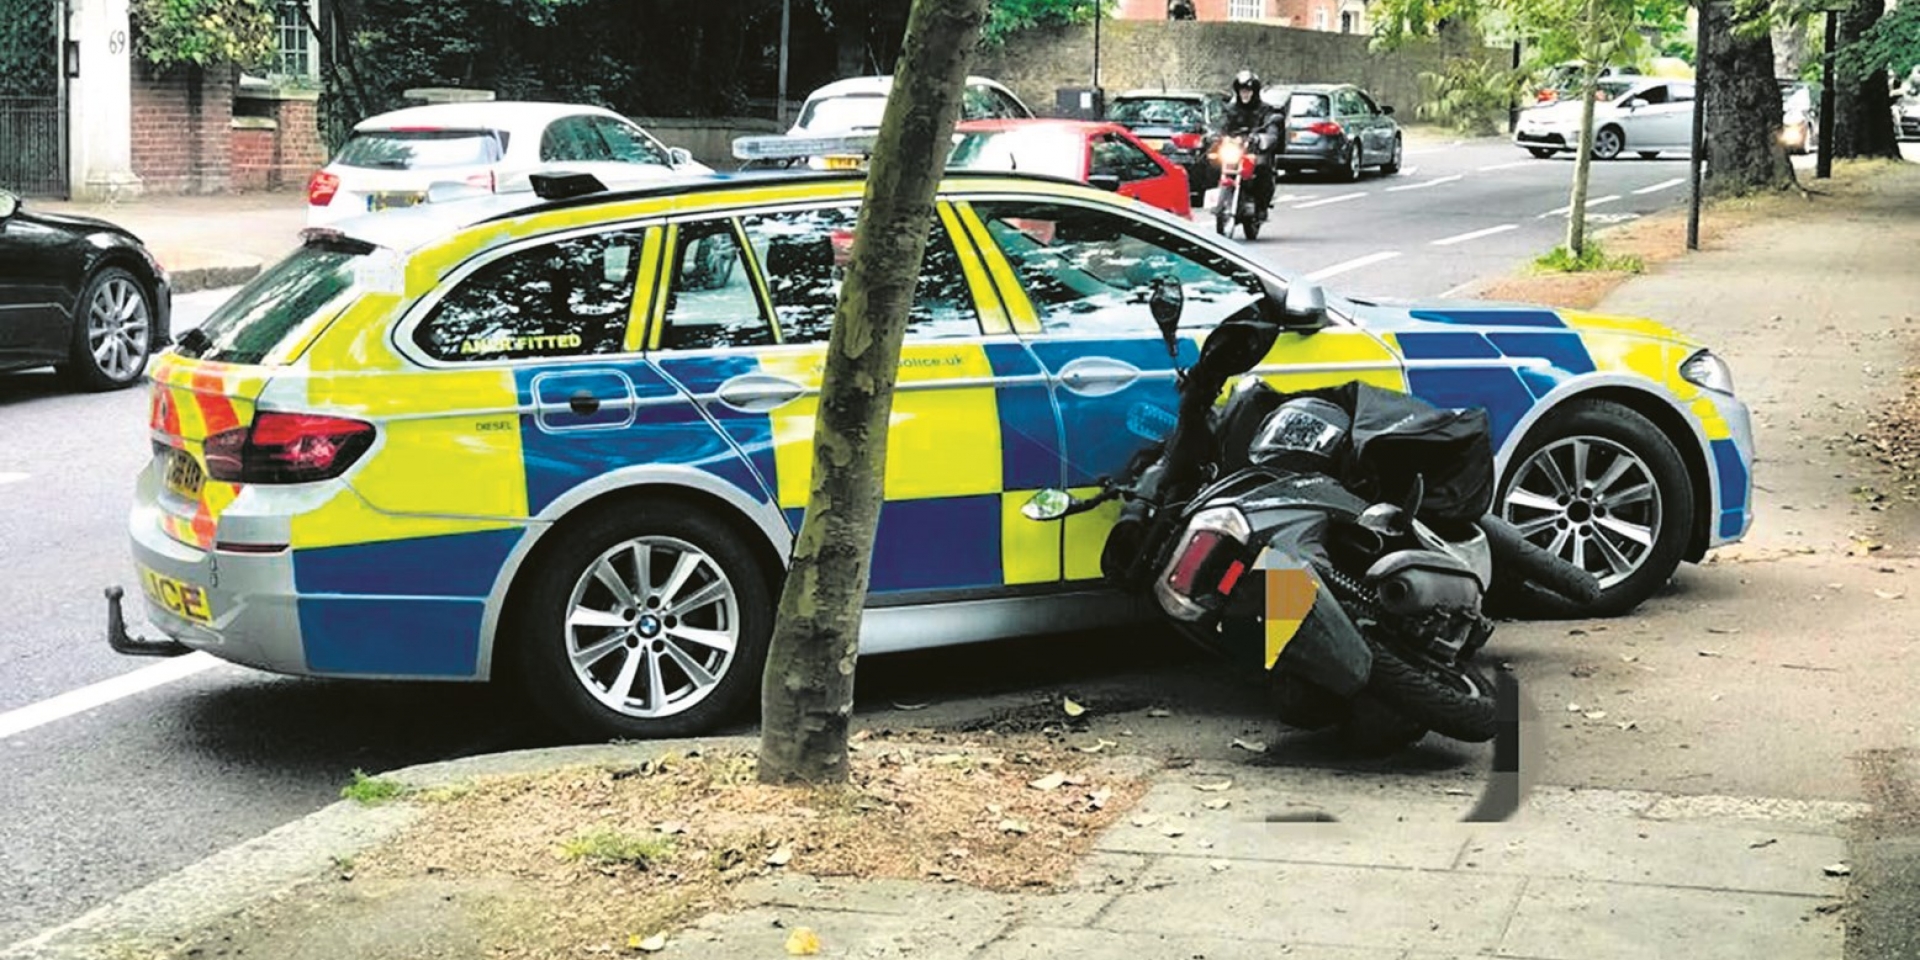 以暴制暴才是解決之道？英國警方採用強硬碰撞手段對付飛車劫匪